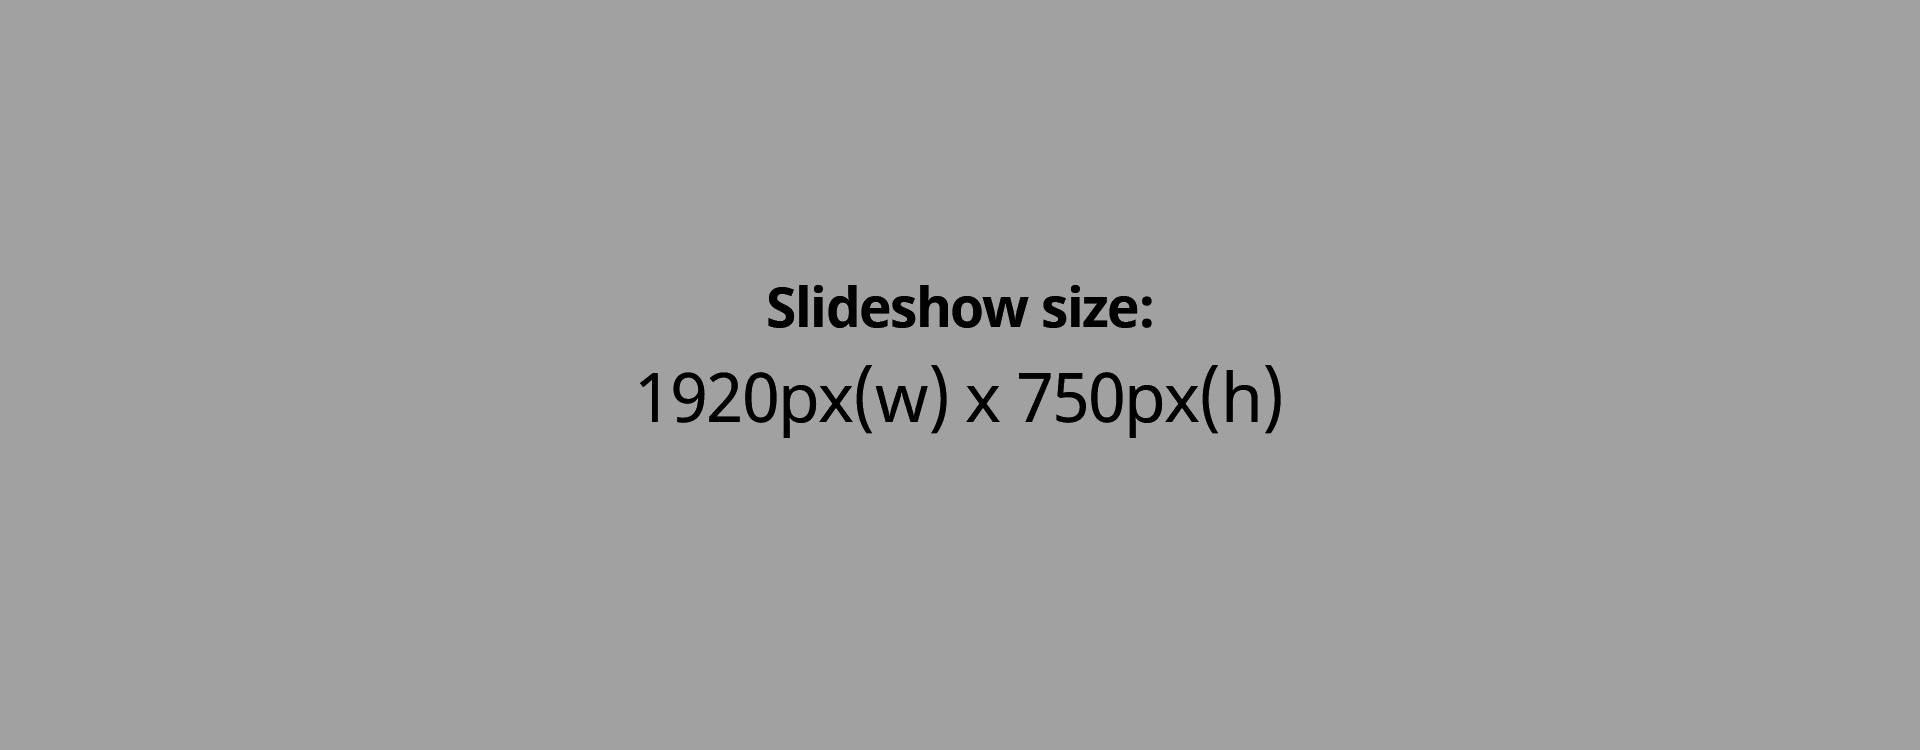 Slideshow size: 1920px(w) x 1200px(h)